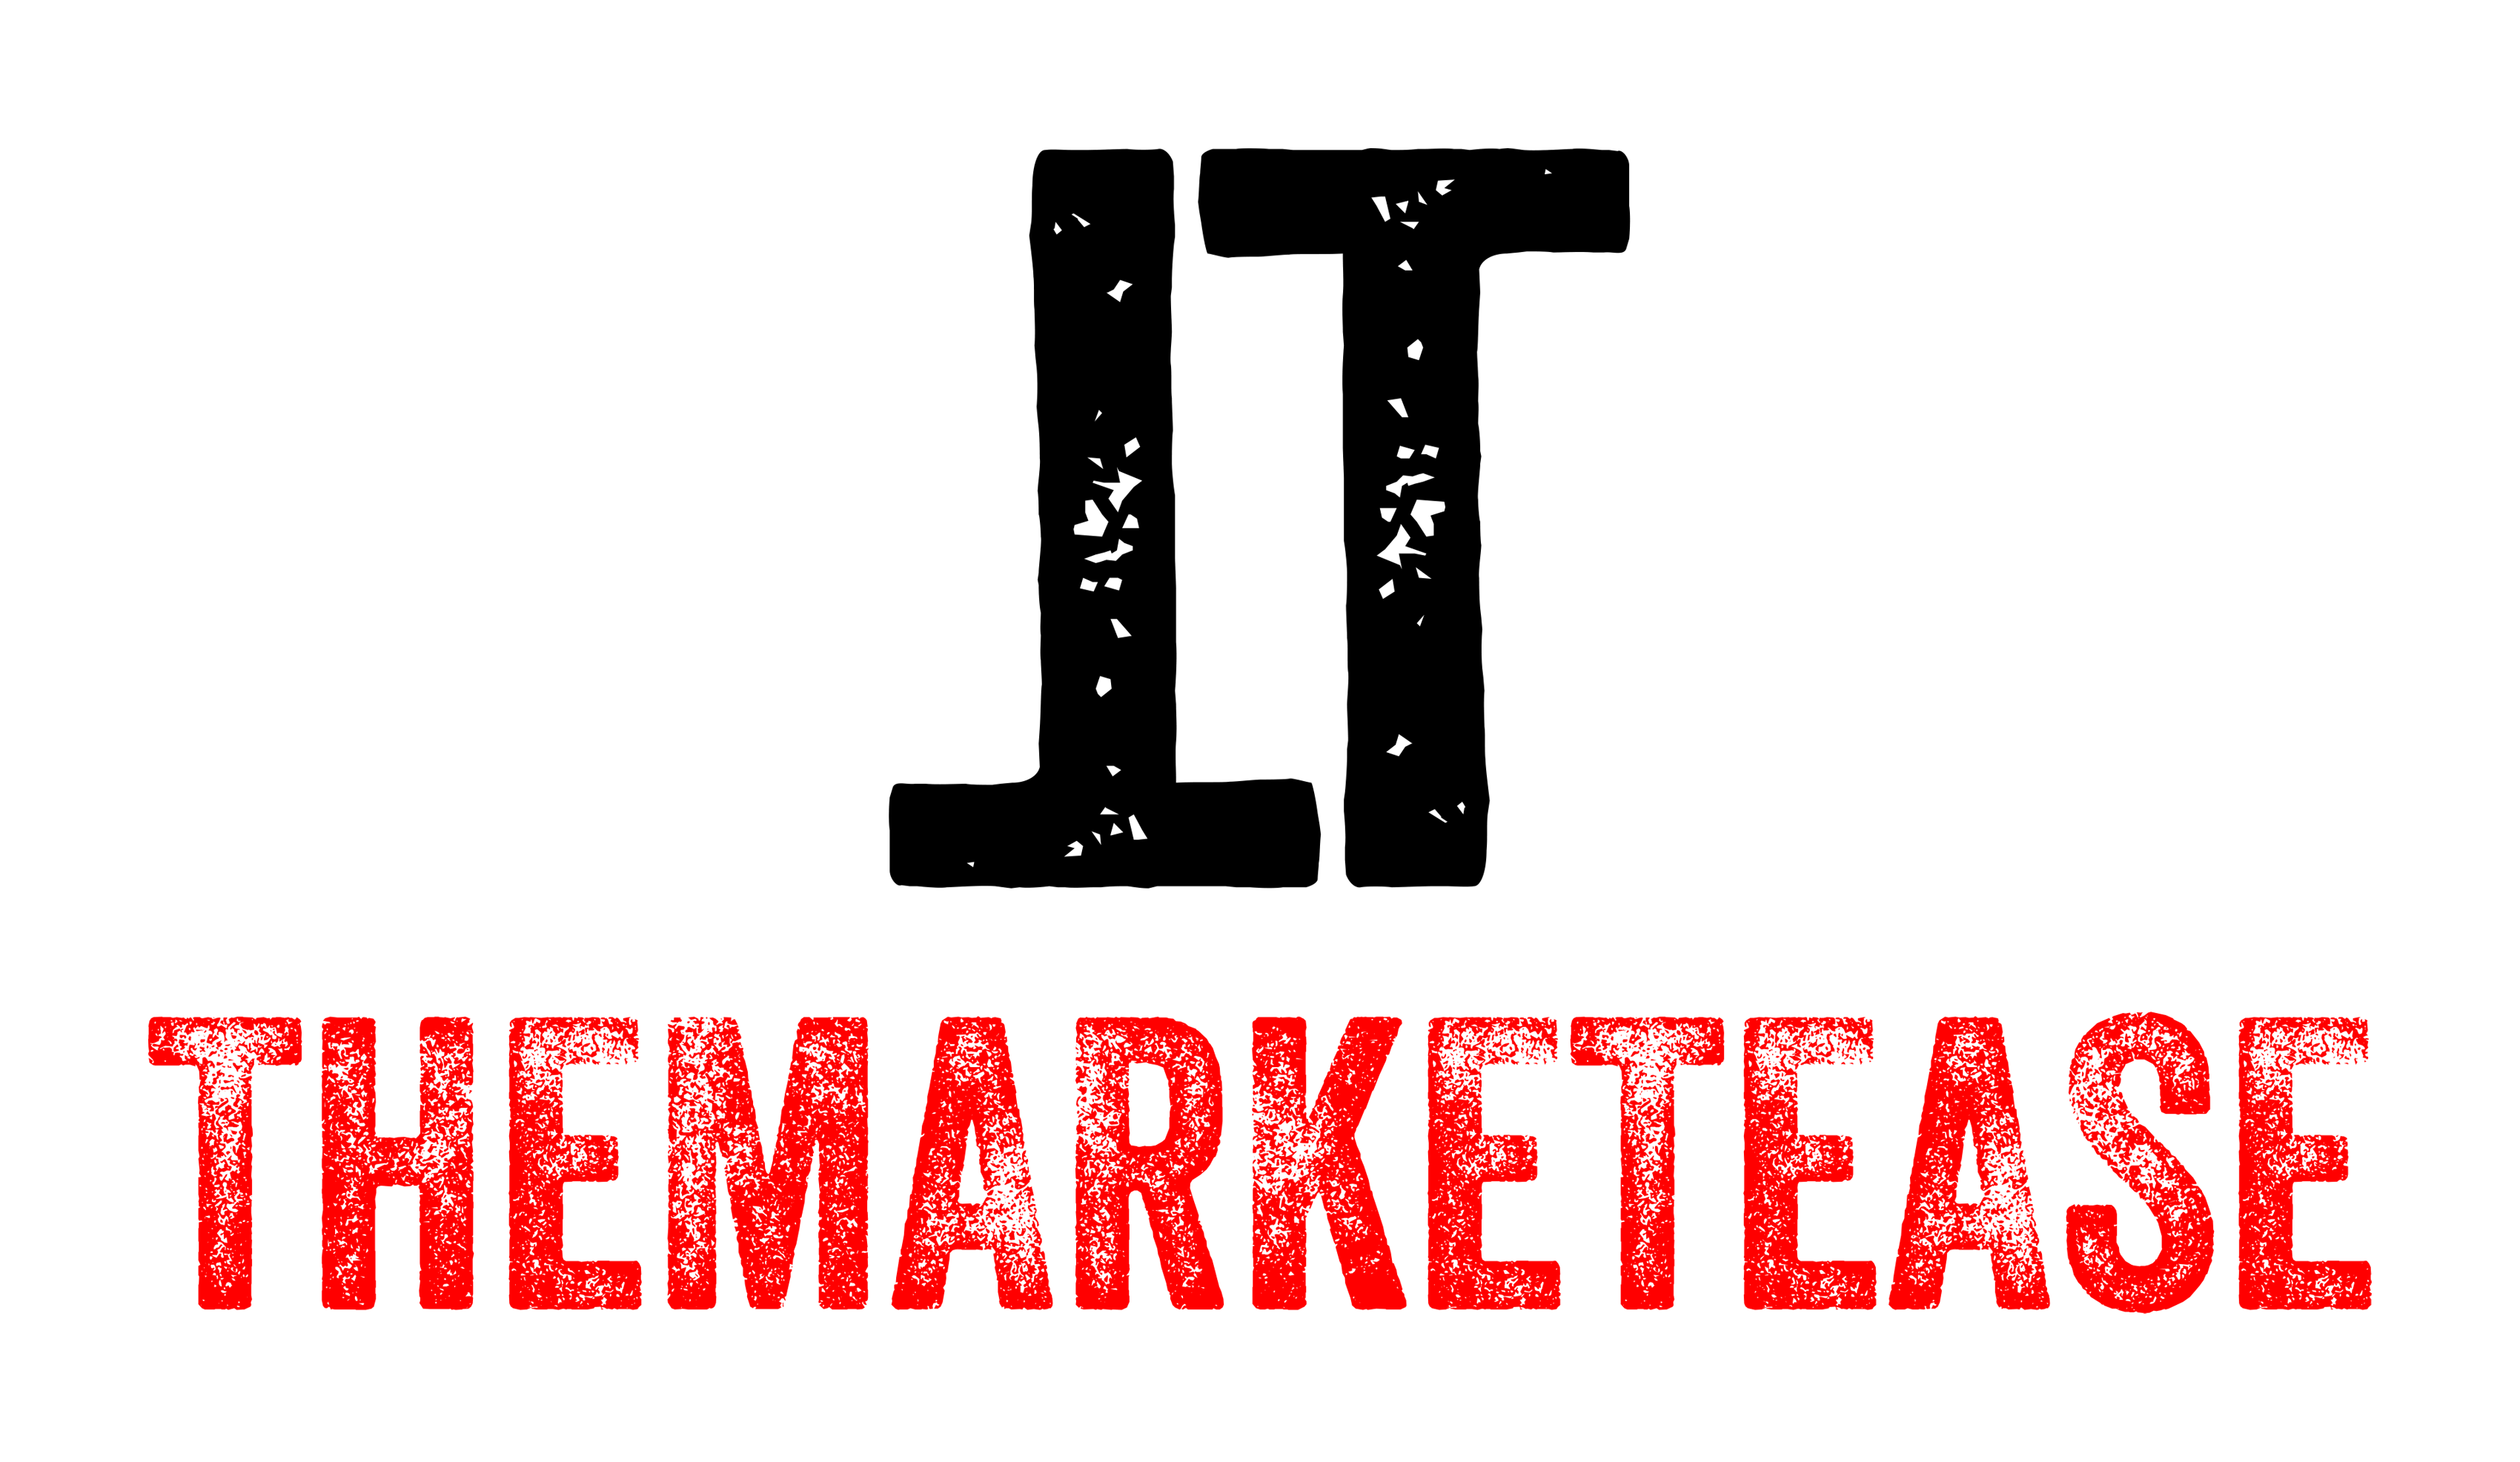 TheMarketease - Inbound Marketing Agency